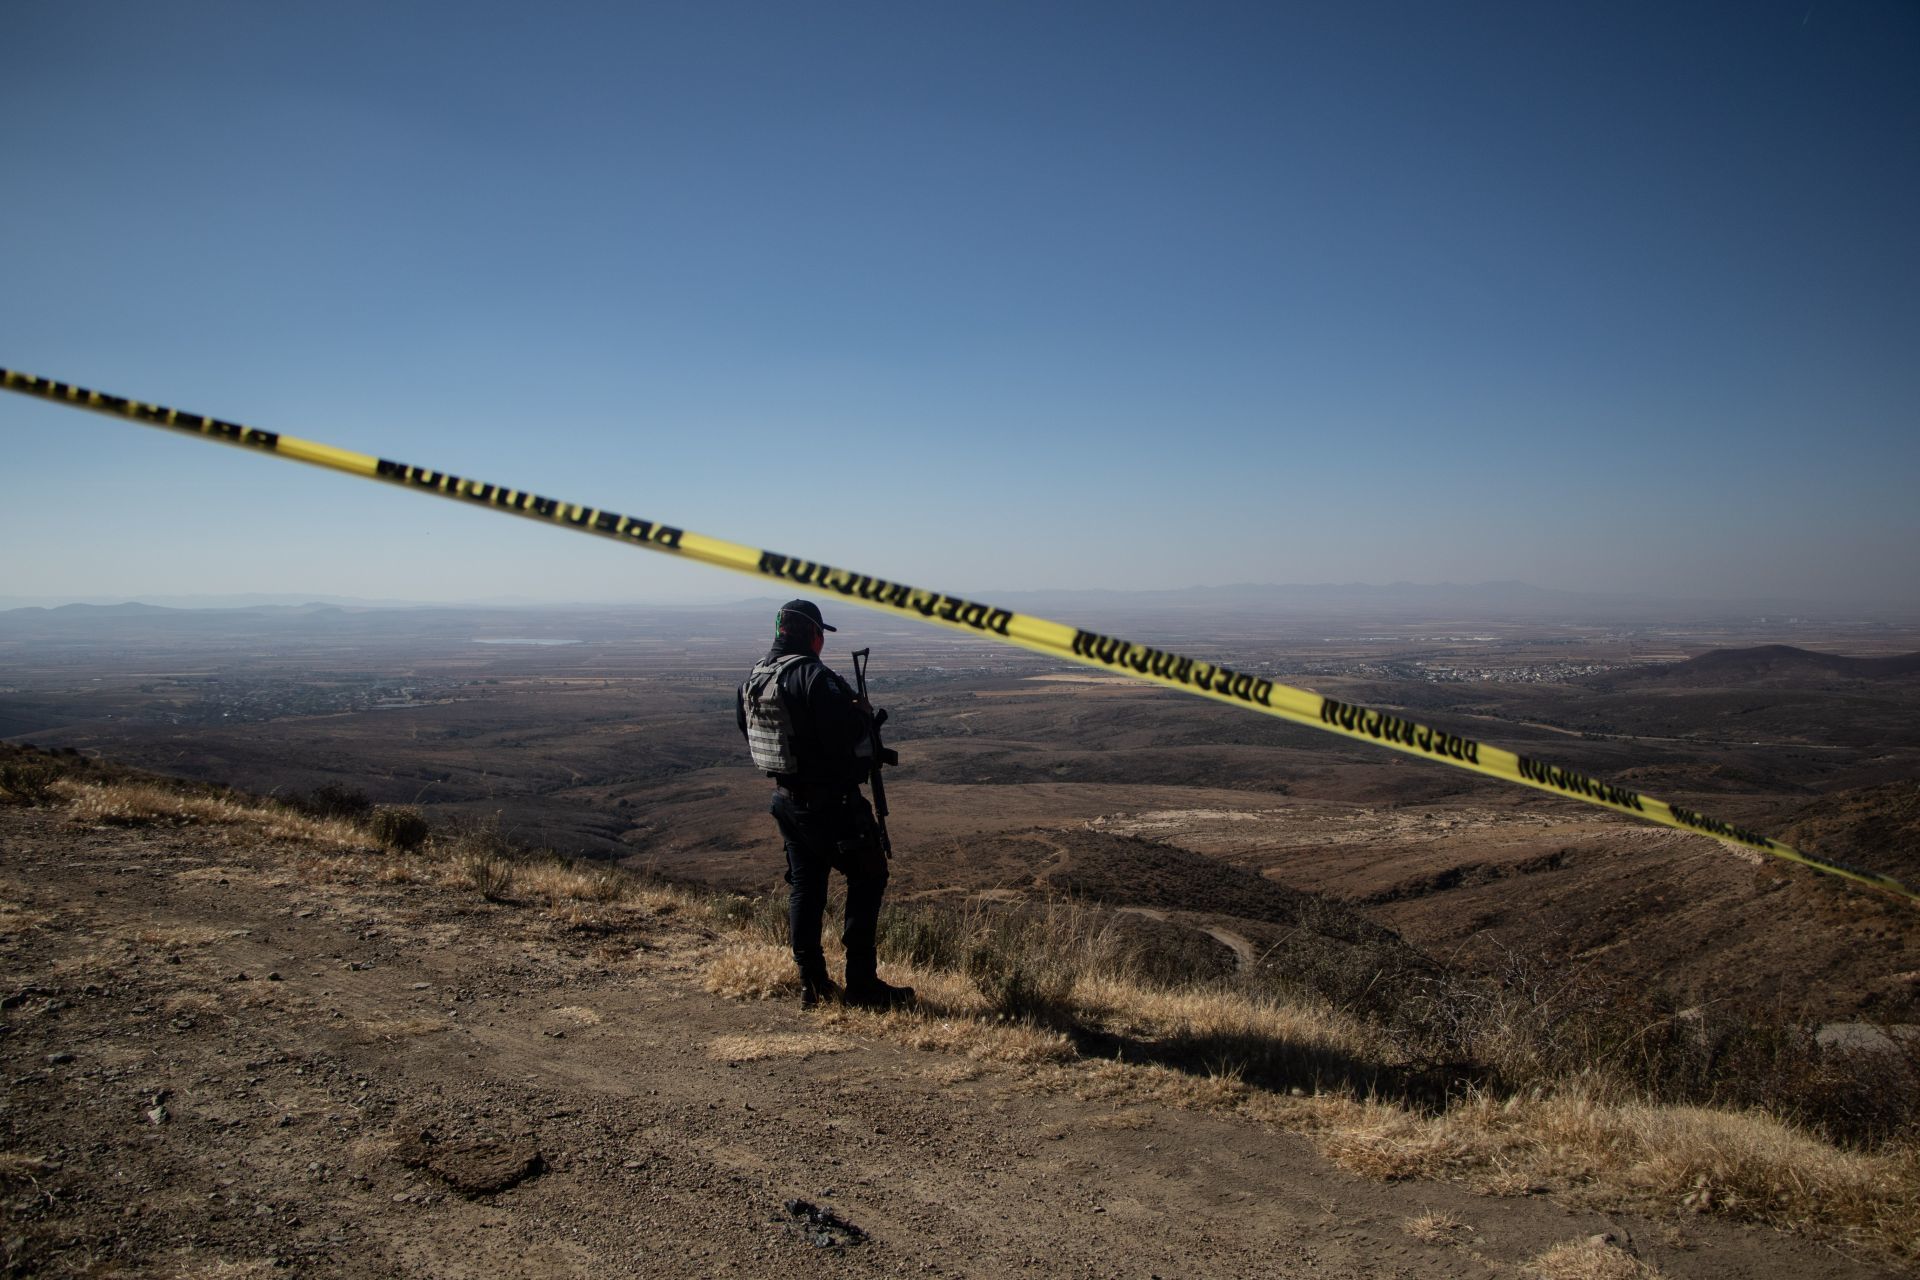 Hallan los cuerpos de cinco personas sobre carretera de Michoacán